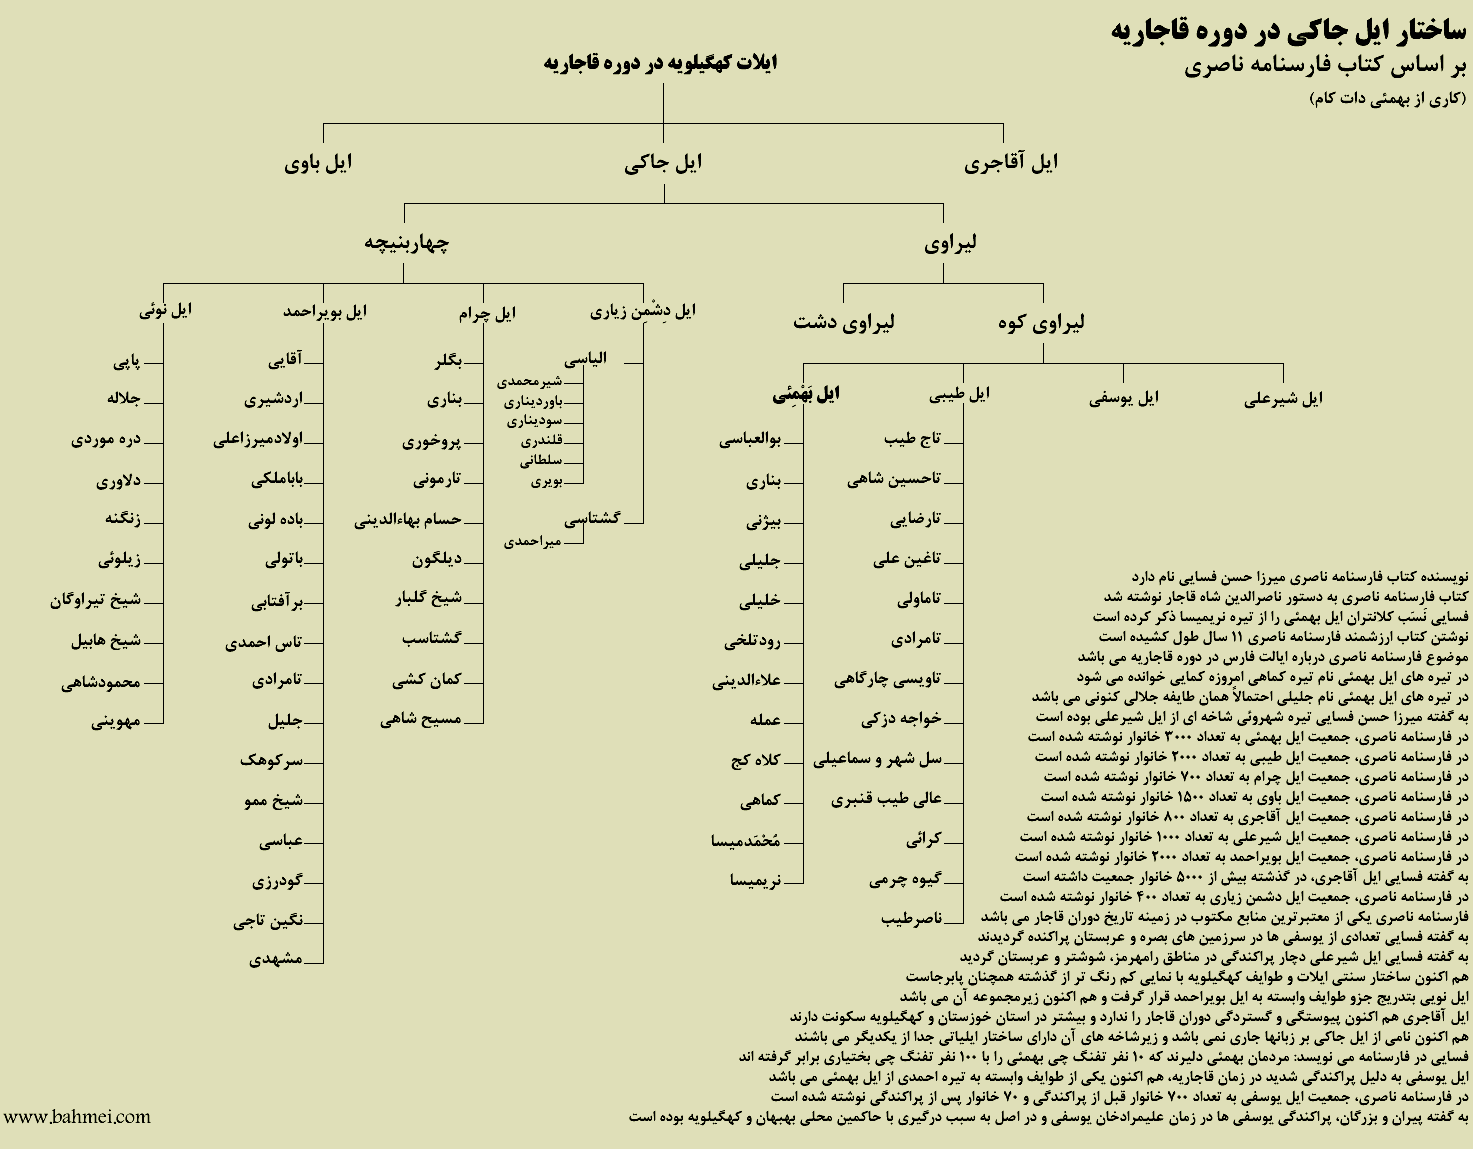 نمودار درختی ساختار ایل جاکی در دوره قاجاریه بر اساس کتاب فارسنامه ناصری